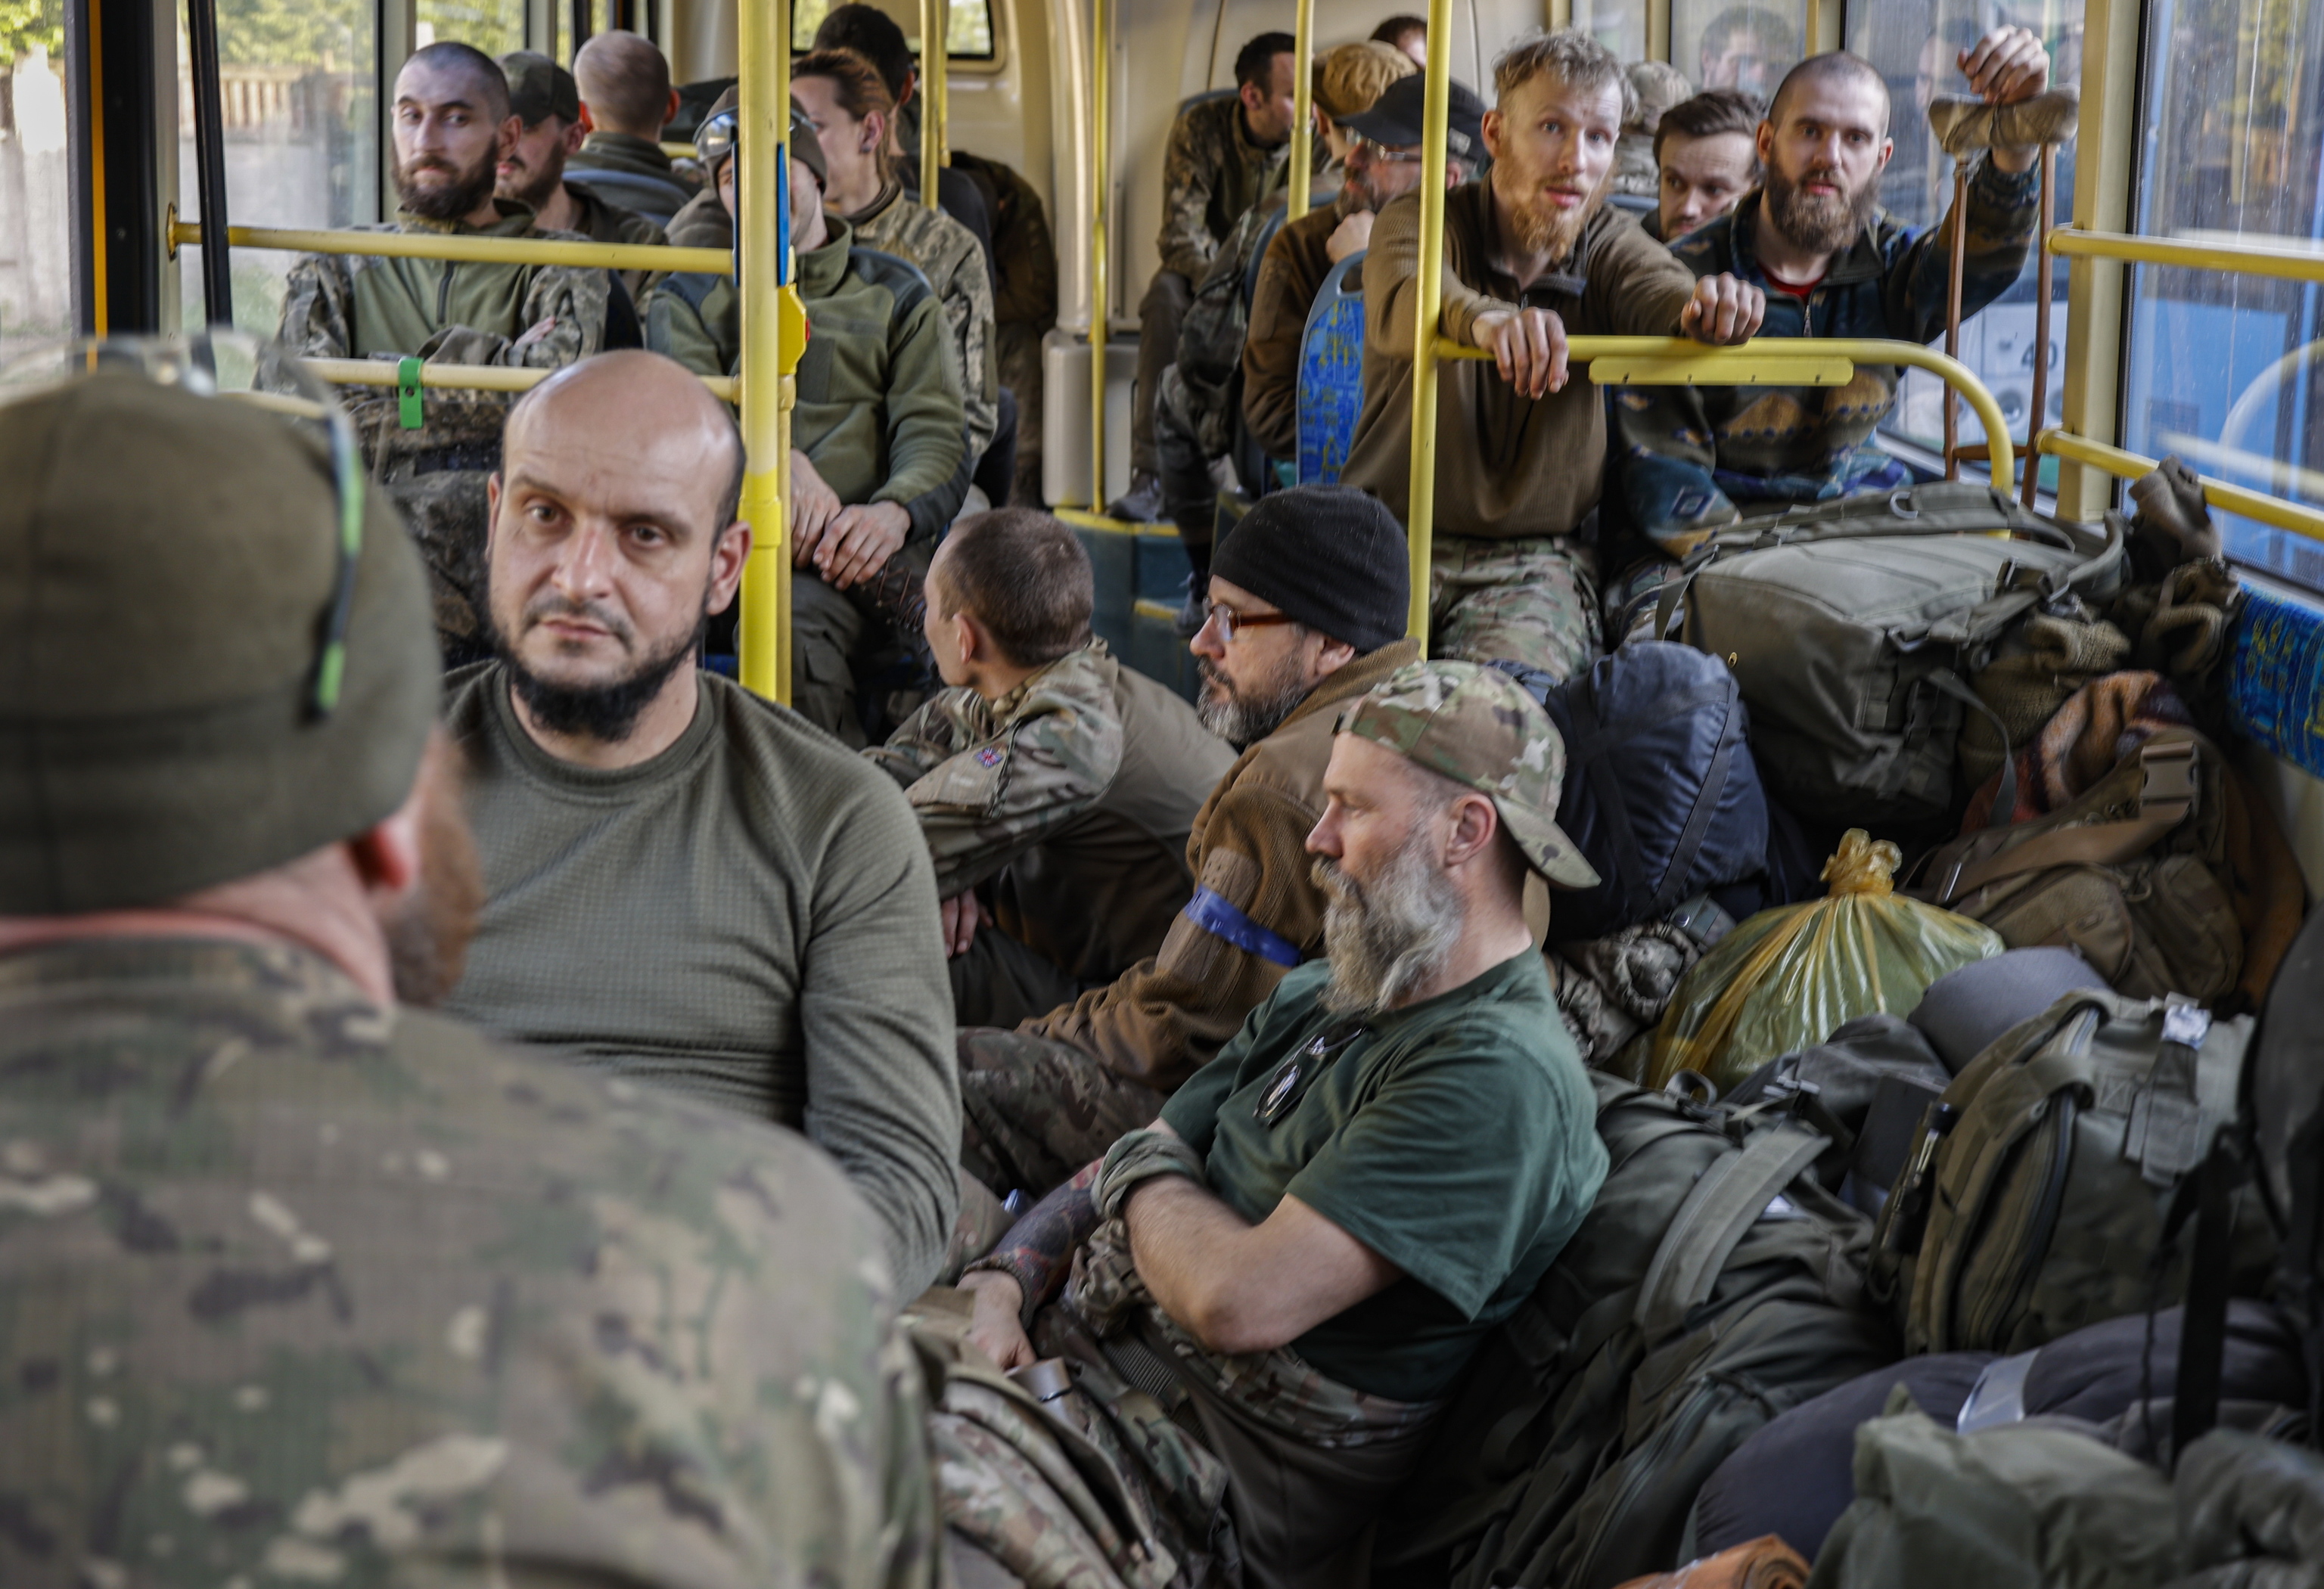 Un tribunal decidirá el destino de los combatientes ucranianos de Azovstal  tras su rendición | Internacional